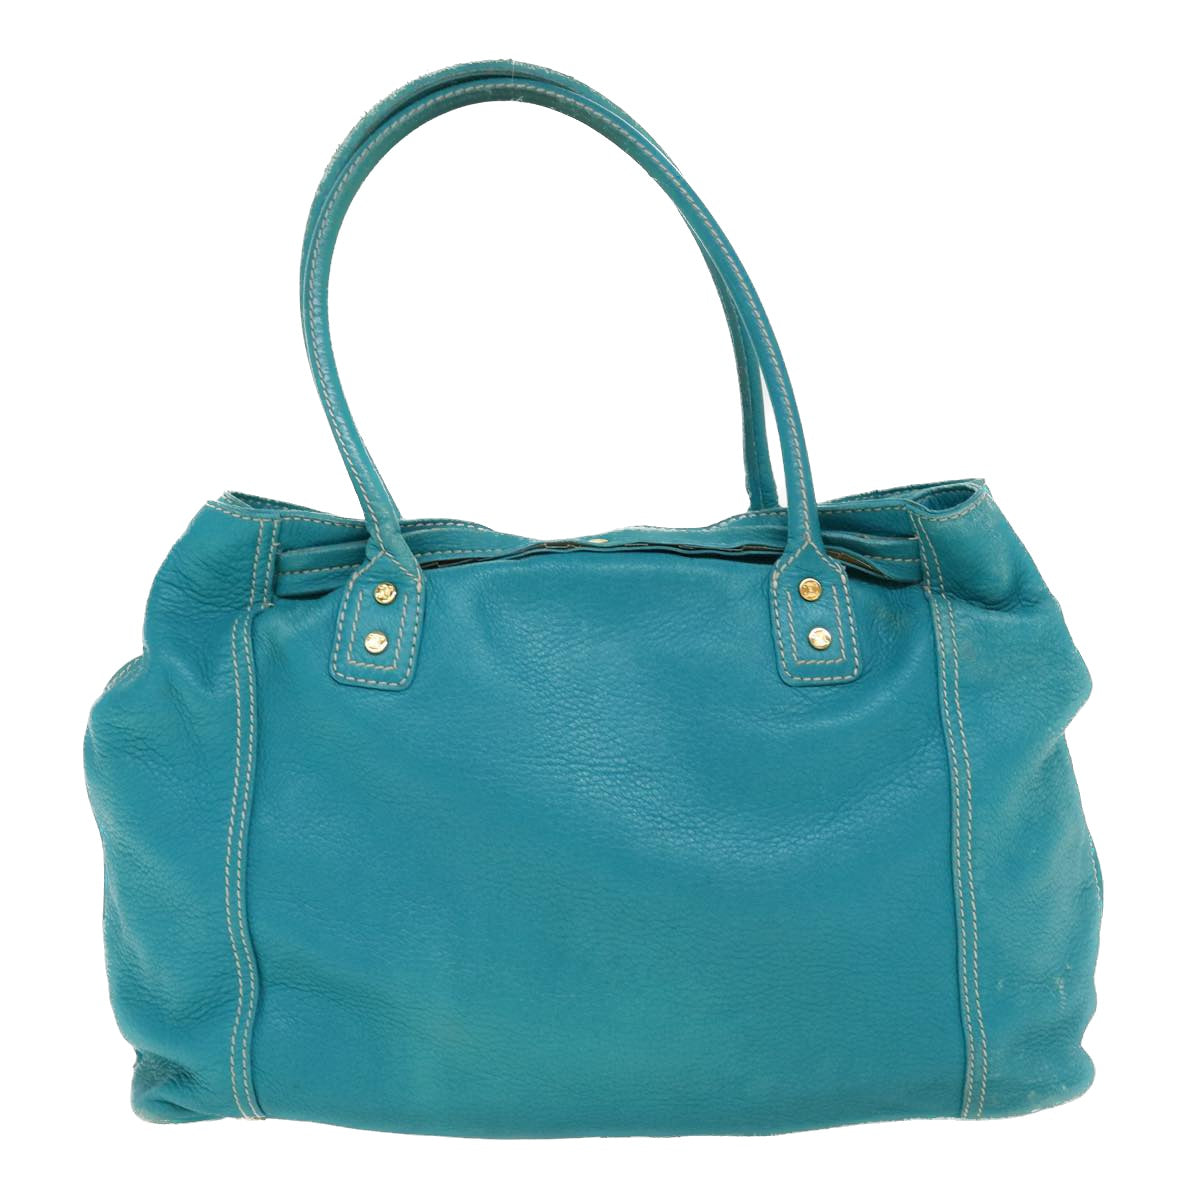 CELINE Shoulder Bag Leather Light Blue Auth im428 - 0